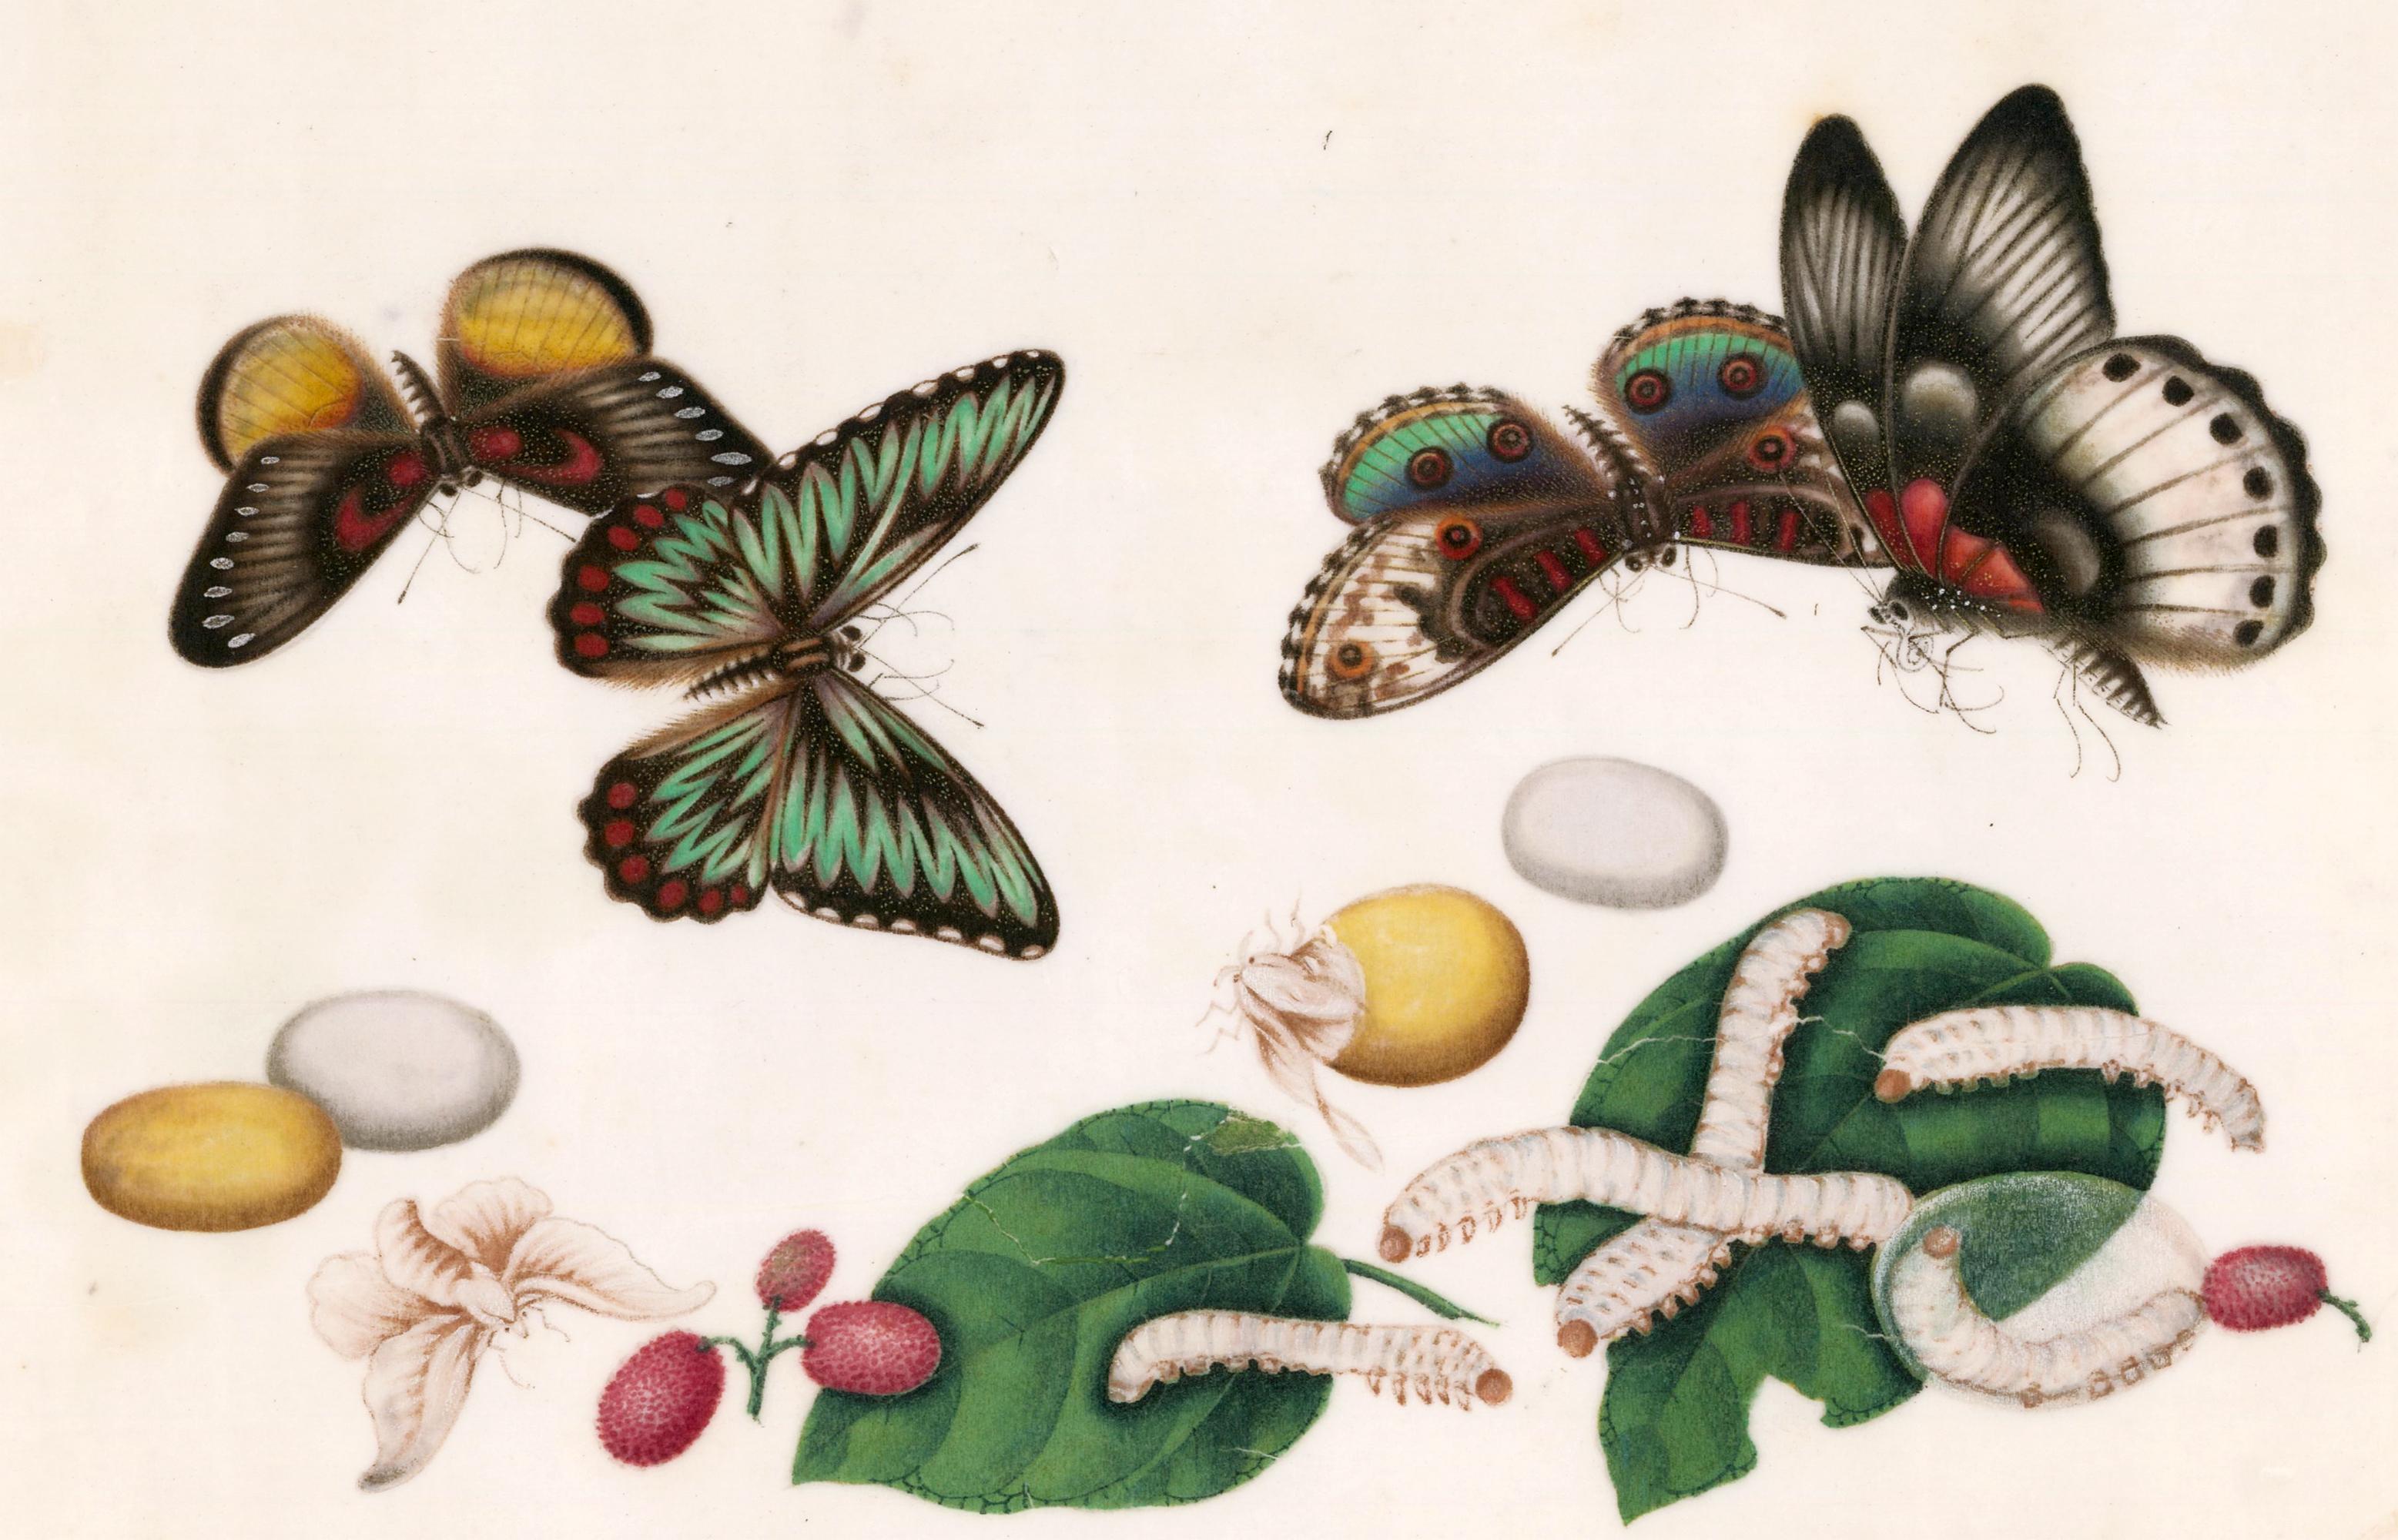 Papillons chinois et Worms de soie avec nus de lychée  - Painting de Unknown